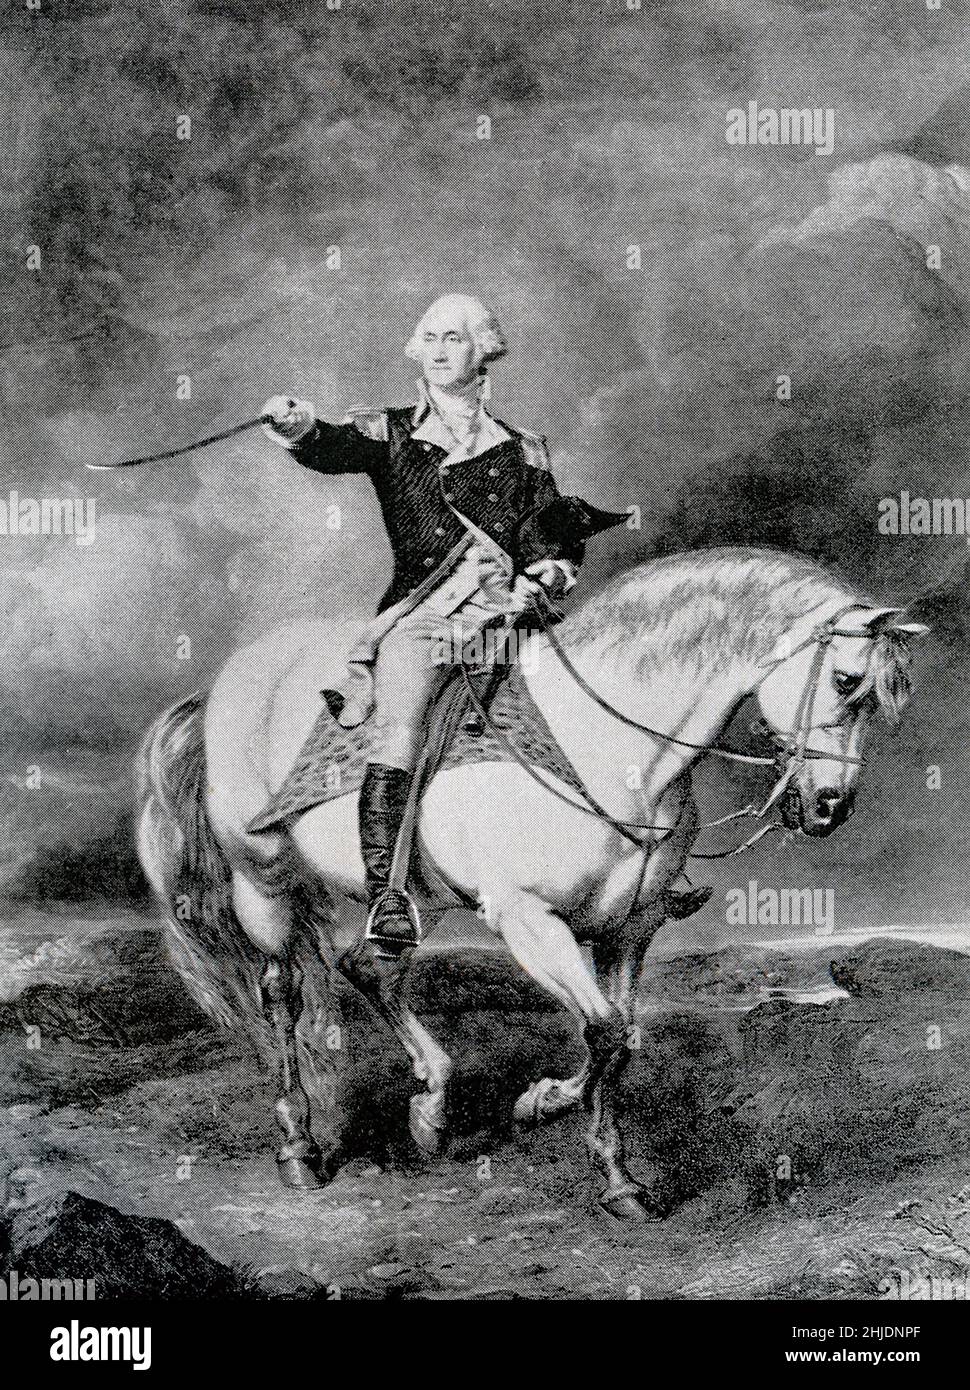 Il generale George Washington è stato nominato comandante in capo dell'esercito continentale il 15 giugno 1775. Soldato americano, statista e padre fondatore, fu il primo presidente degli Stati Uniti dal 1789 al 1797. Foto Stock